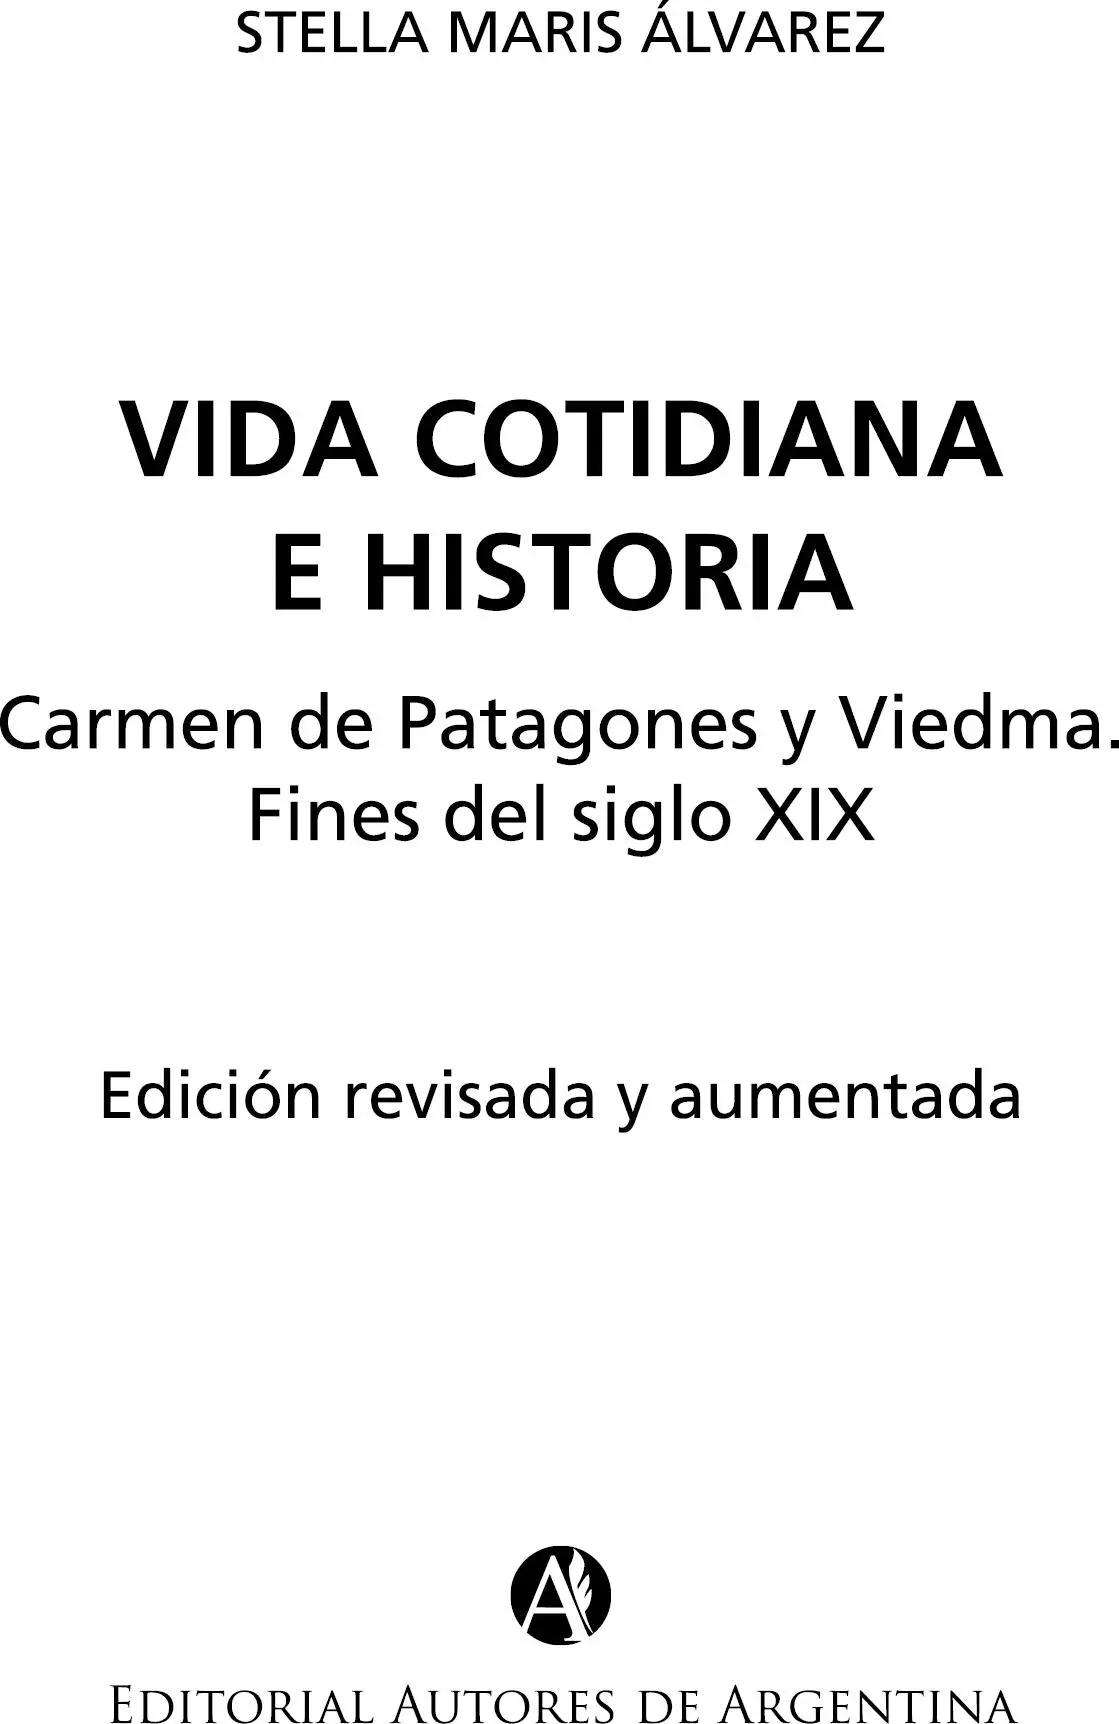 Álvarez Stella Maris Vida cotidiana e historia Carmen de Patagones y Viedma - фото 1